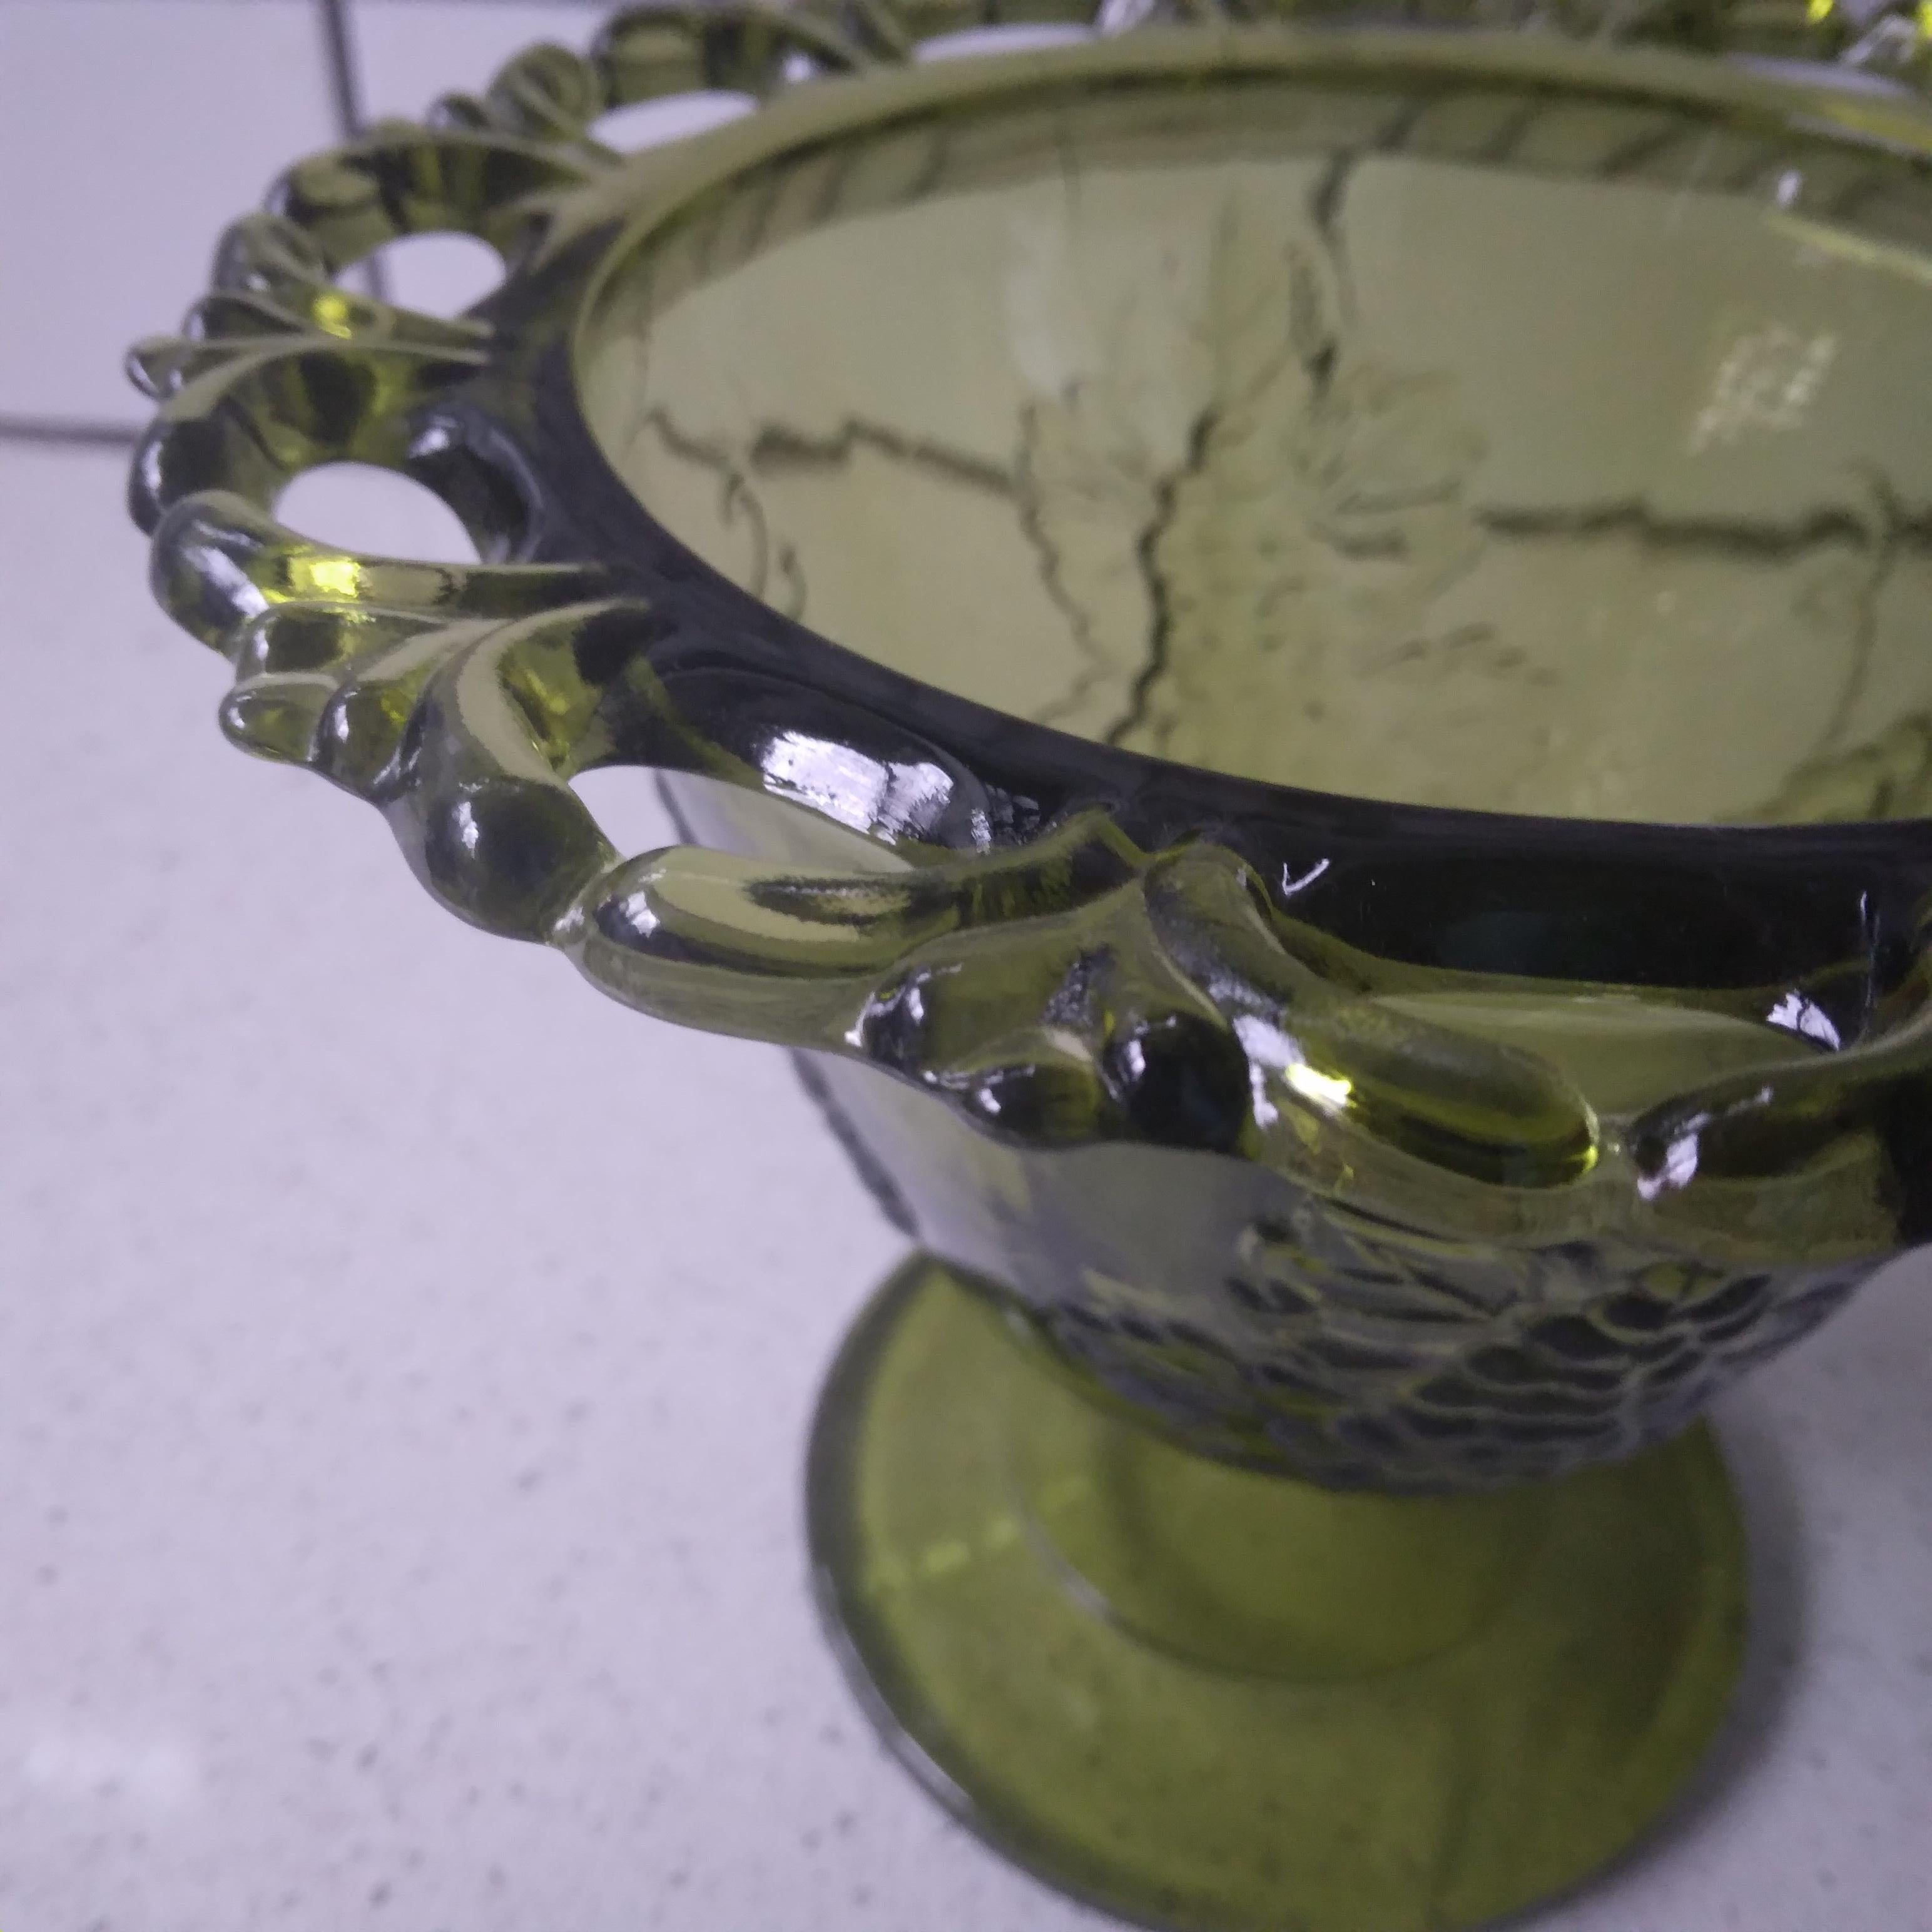 Wir lieben die avocadogrünen Farbtöne dieser robusten und schönen Vintage-Schale. 

Dieses Glasstück zeigt ein wunderschönes Harvest Grape Design mit einer offenen Spitzenkante. Der Sockel war mit einem hübschen Traubenmotiv versehen, das den Stiel